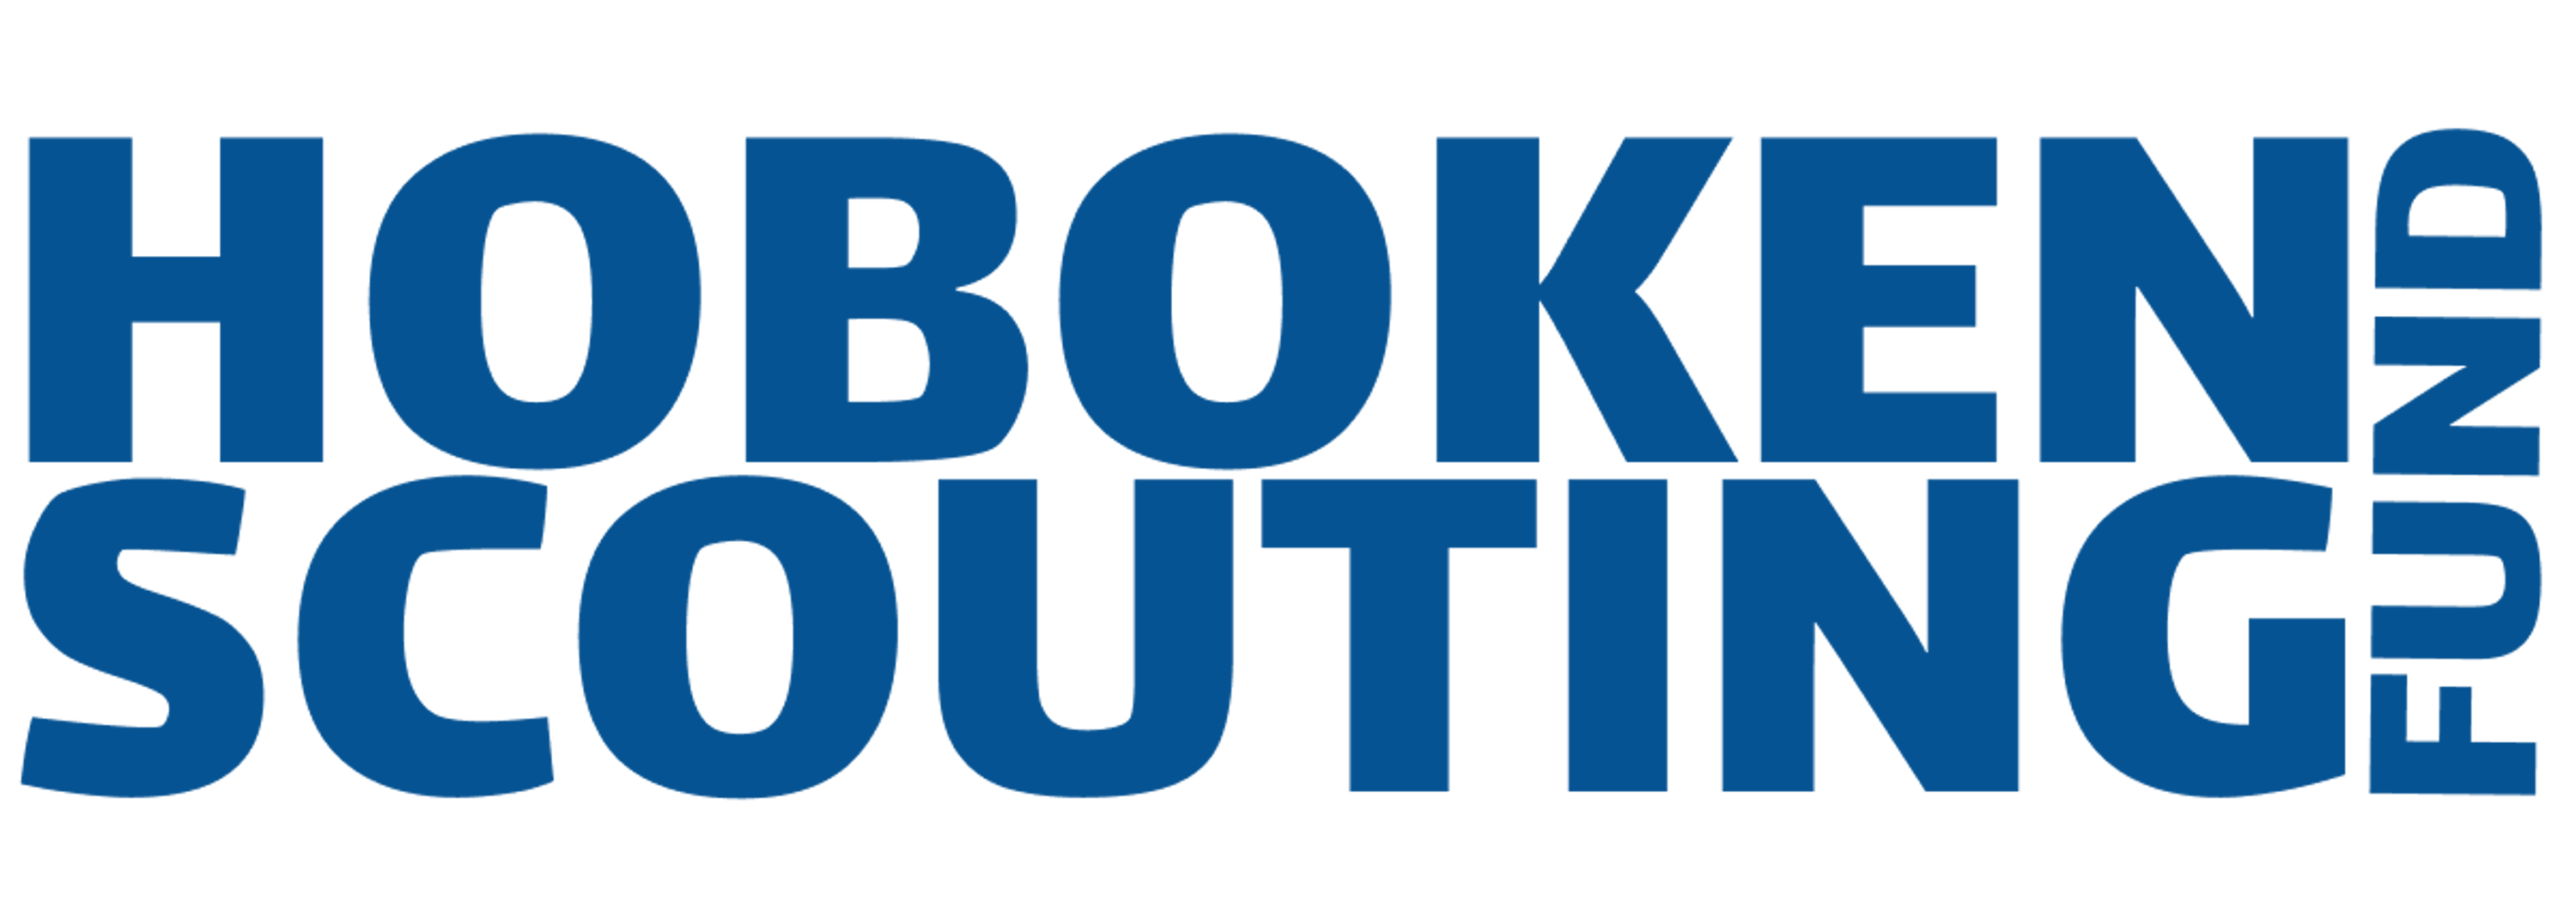 Hoboken Scouting Fund Logo